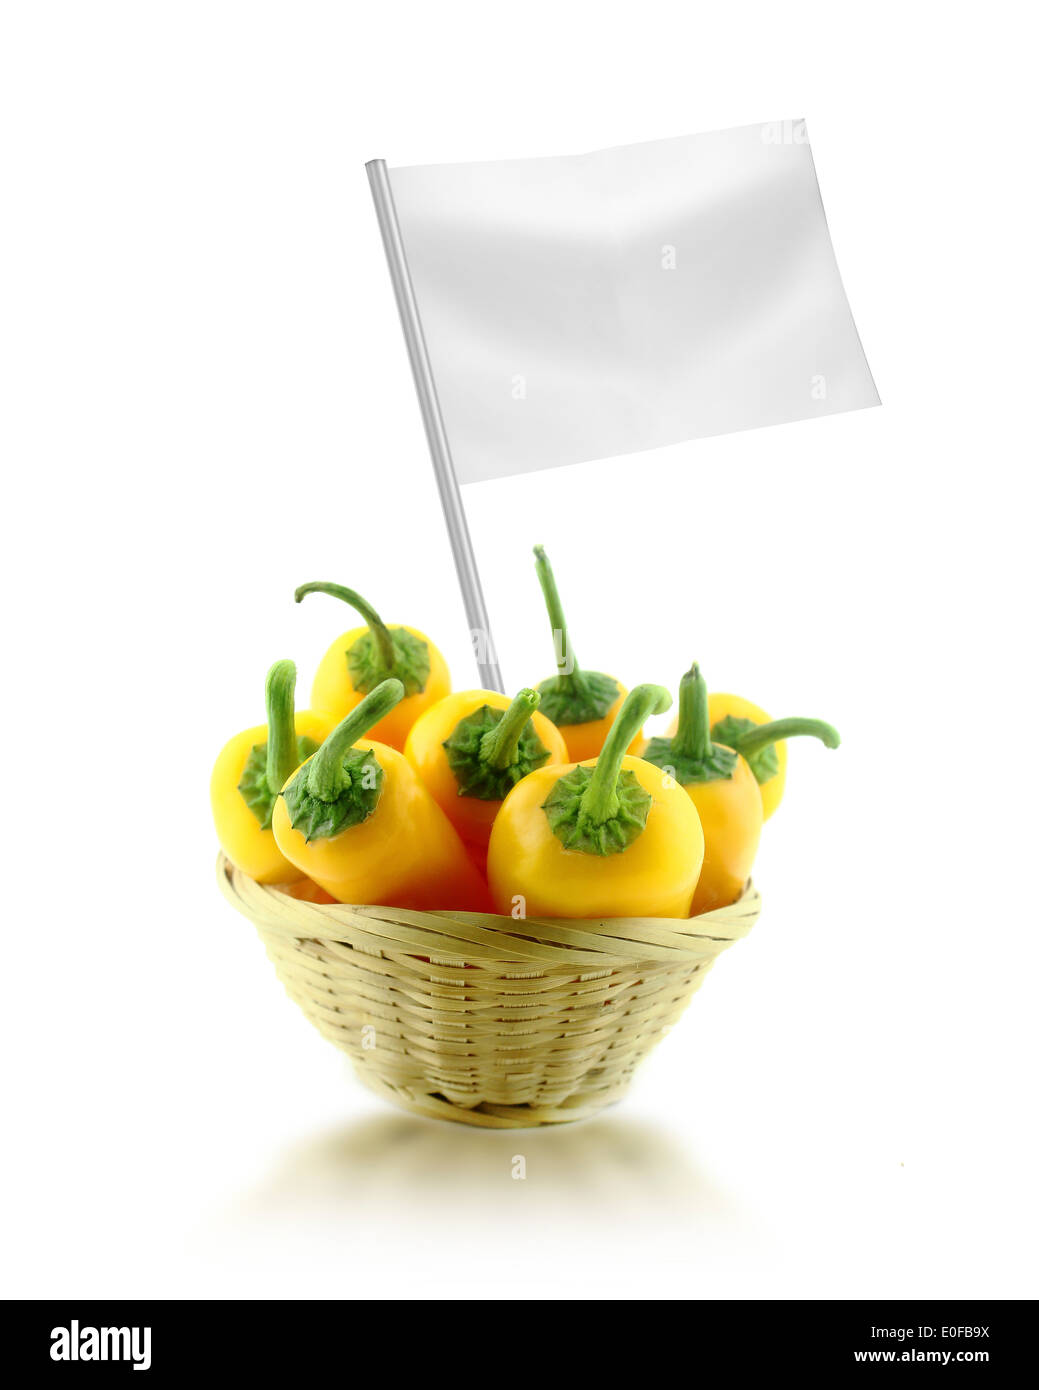 Sana e cibo organico concetto. Giallo fresco peperoncino in piatto di paglia con bandiera che mostra i vantaggi o il prezzo dei frutti. Foto Stock